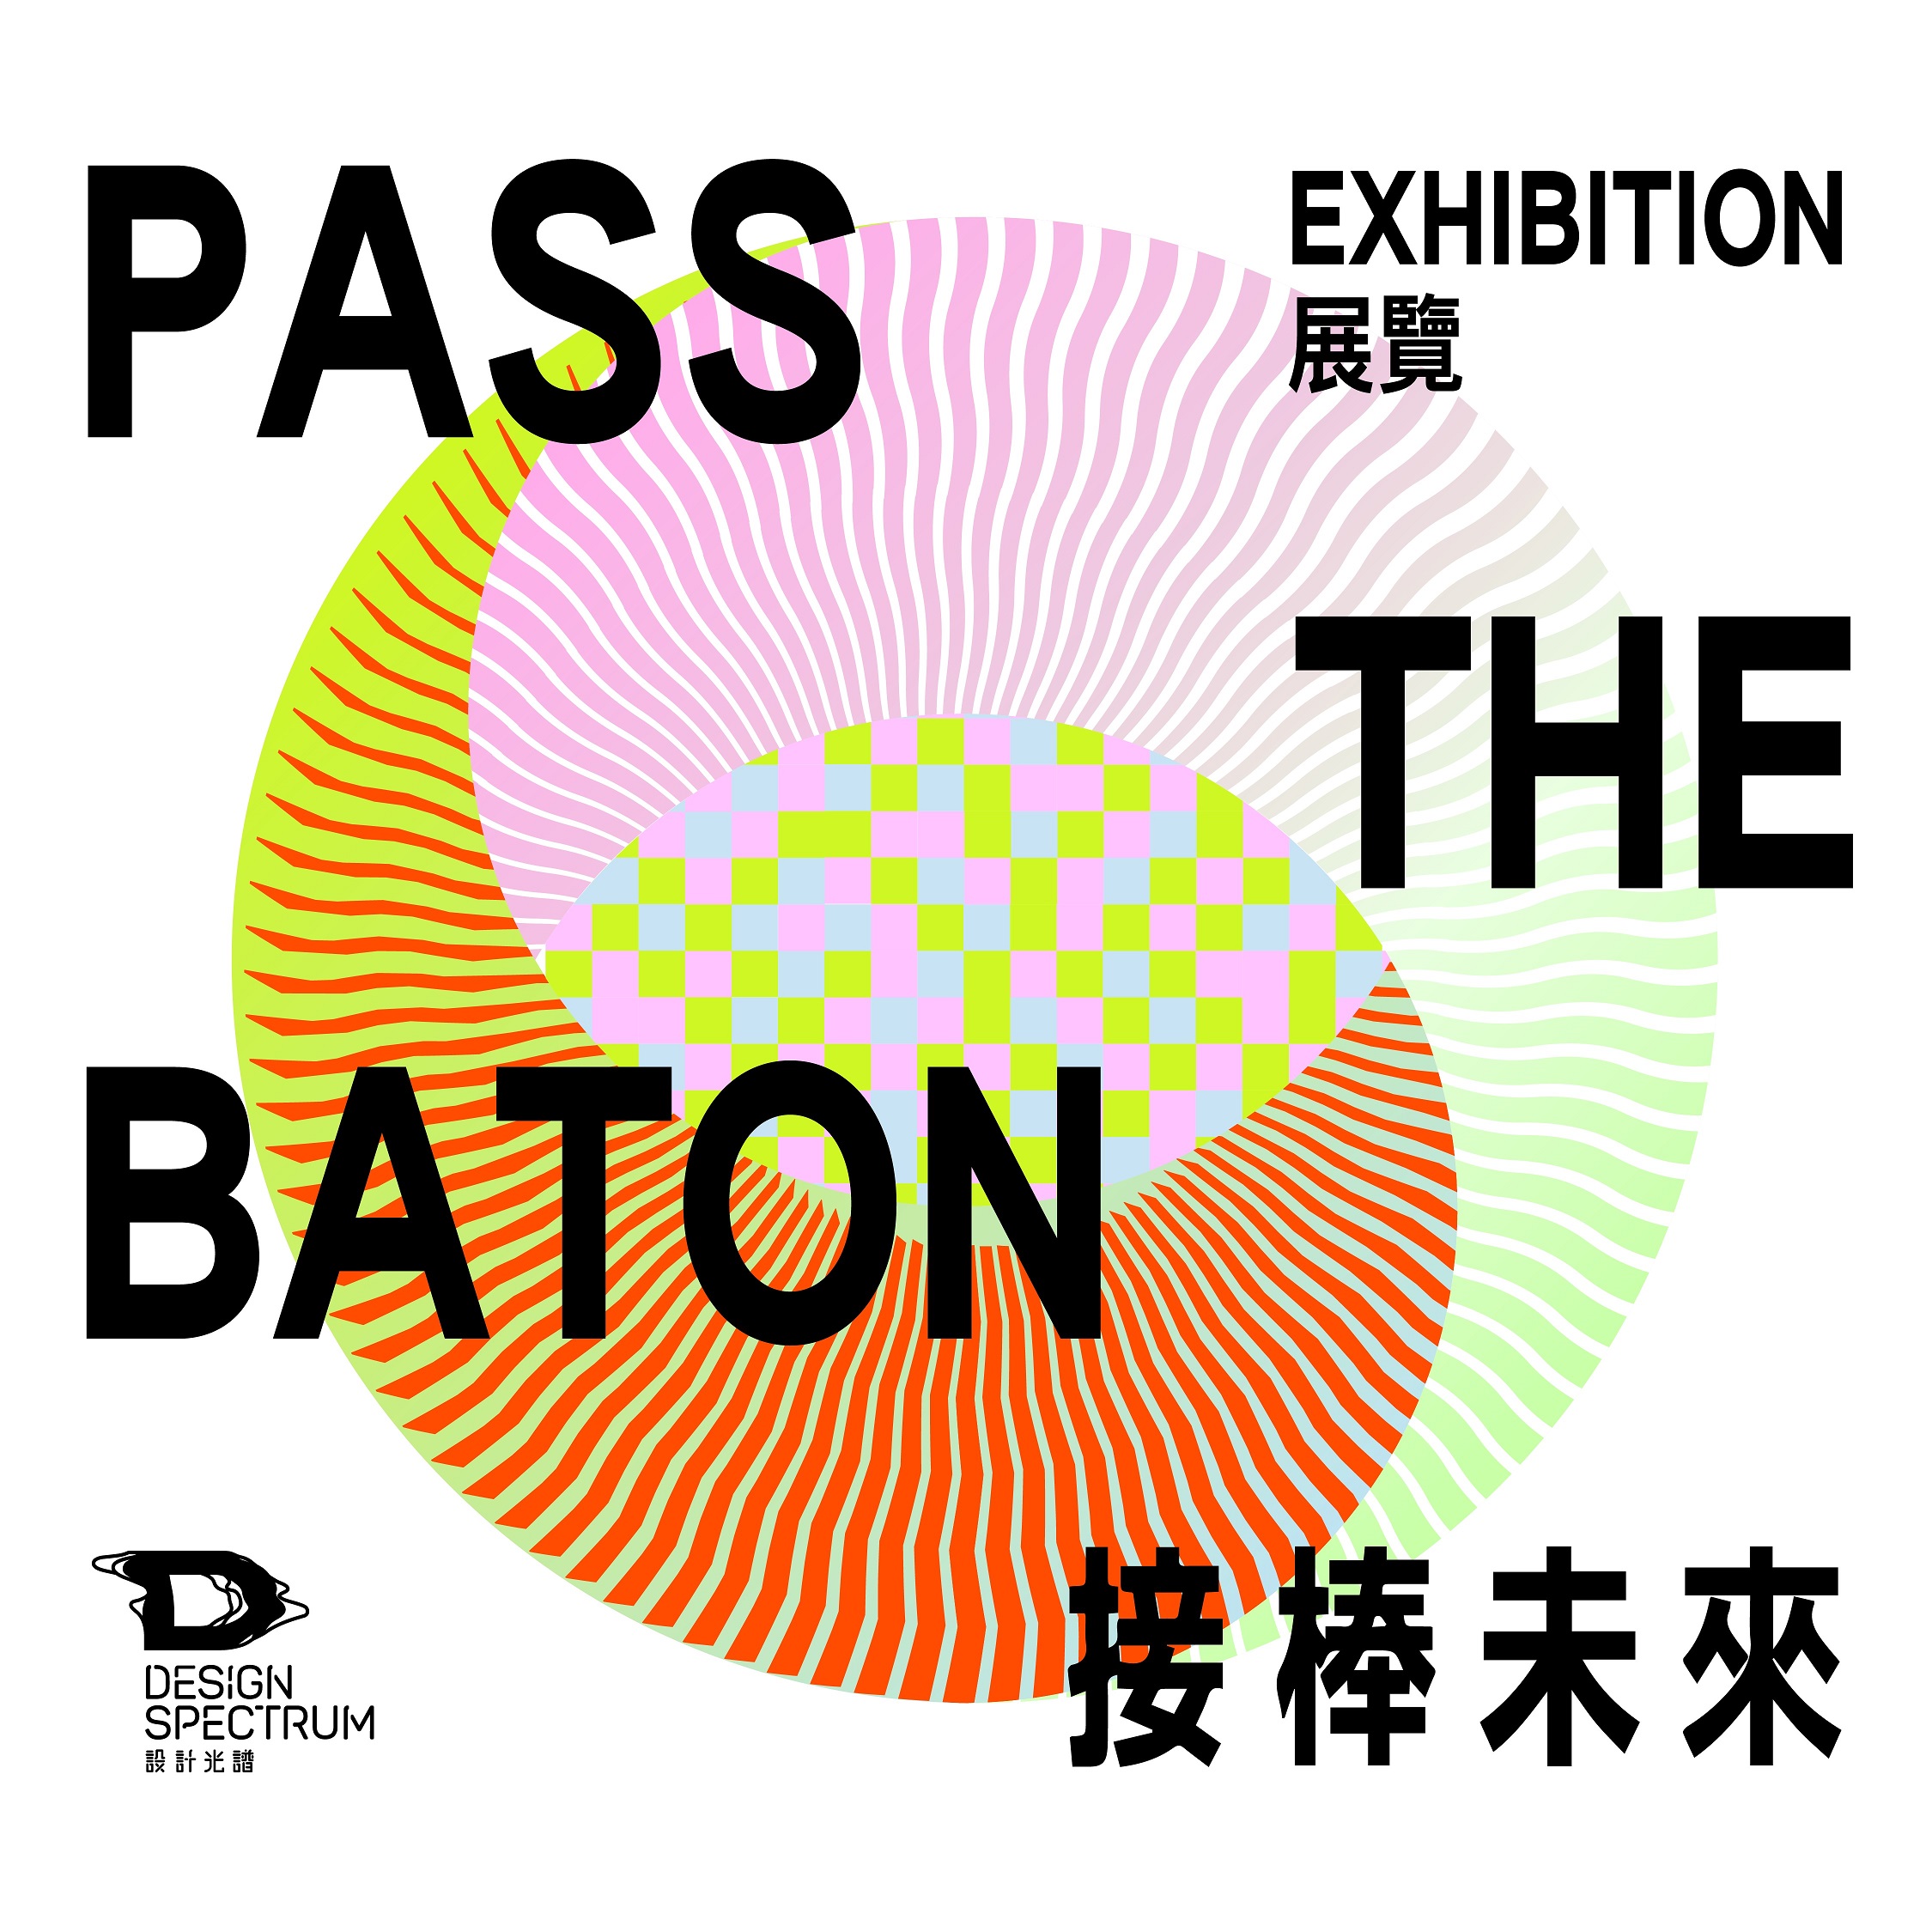 香港设计中心「设计光谱」呈献：「接棒未来」展览     展览第一部分「过界」 揭开序幕